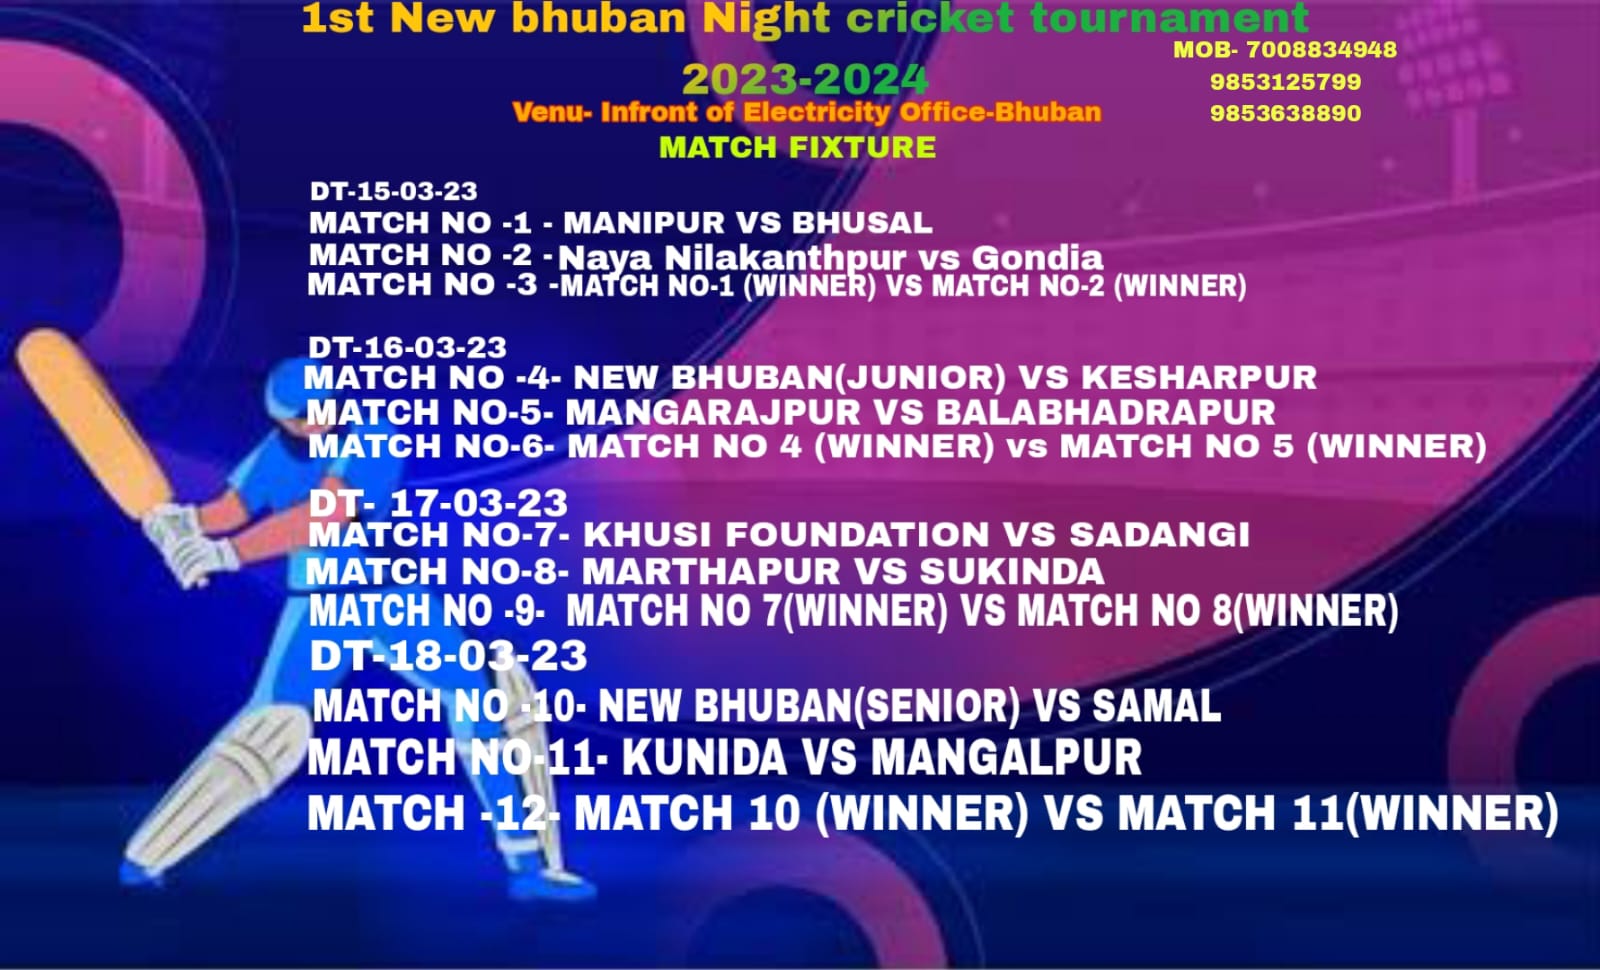 1st NEW BHUBAN NIGHT CRICKET TOURNAMENT 